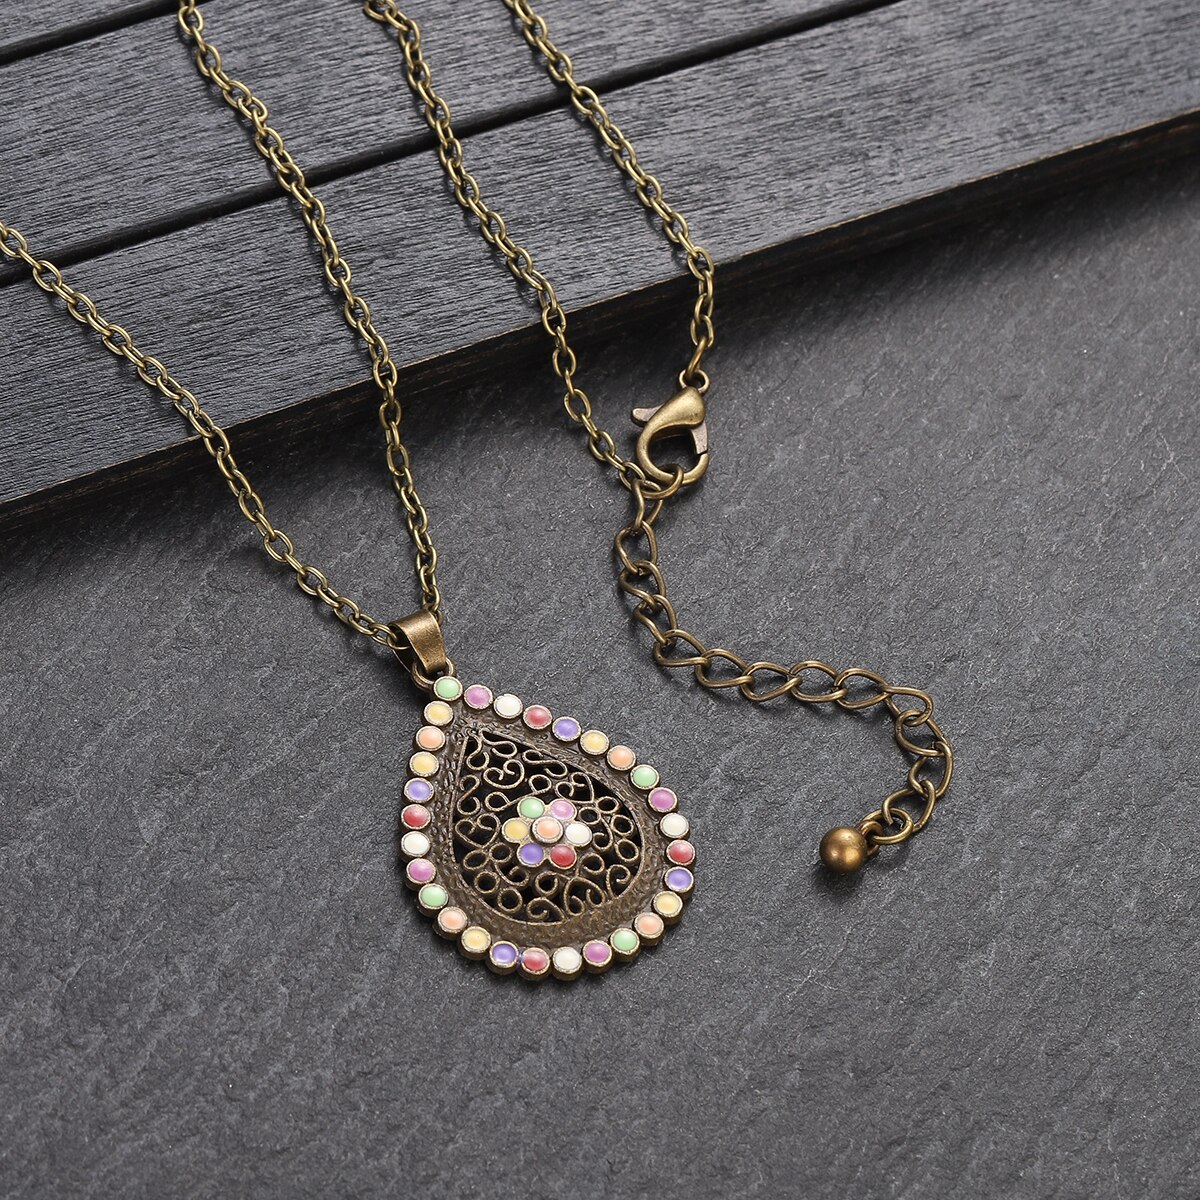 New-Boho-Colorful-Flower-Pendant-Necklace-Set-Women-Retro-Antique-Gold-Color-Hollow-Water-Drop-Jewel-1005004921038963-3